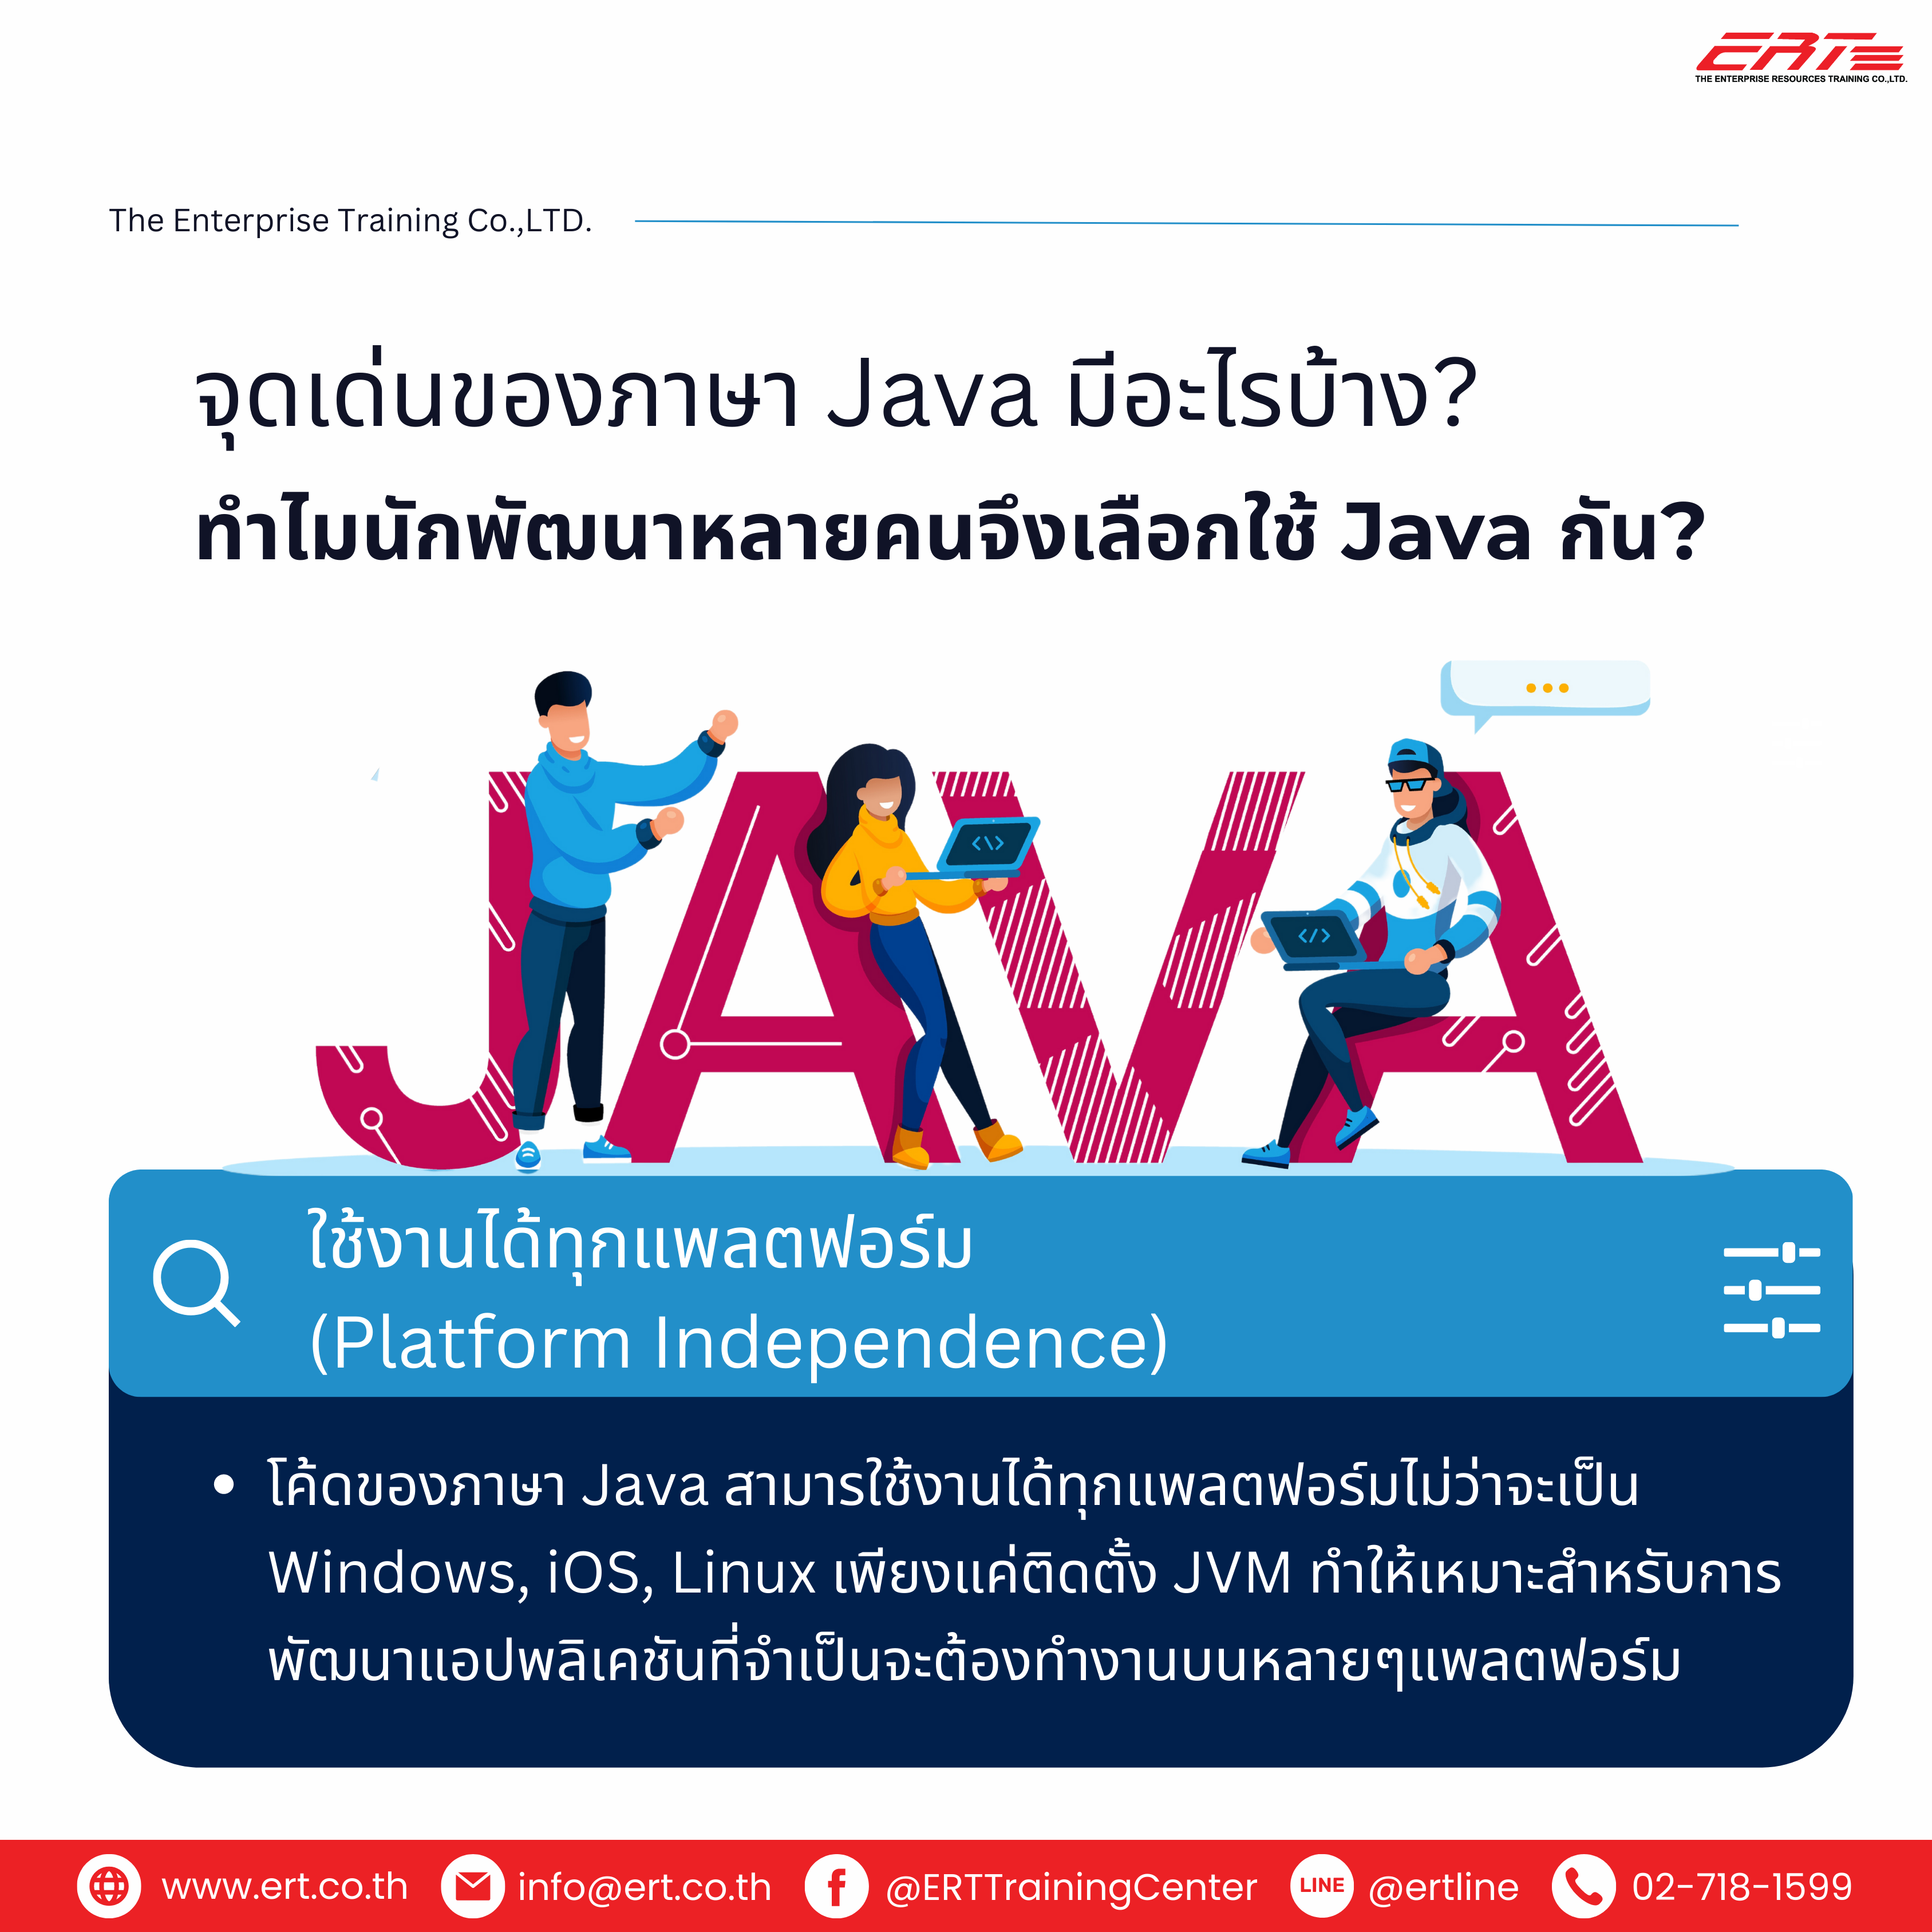 Java คืออะไร